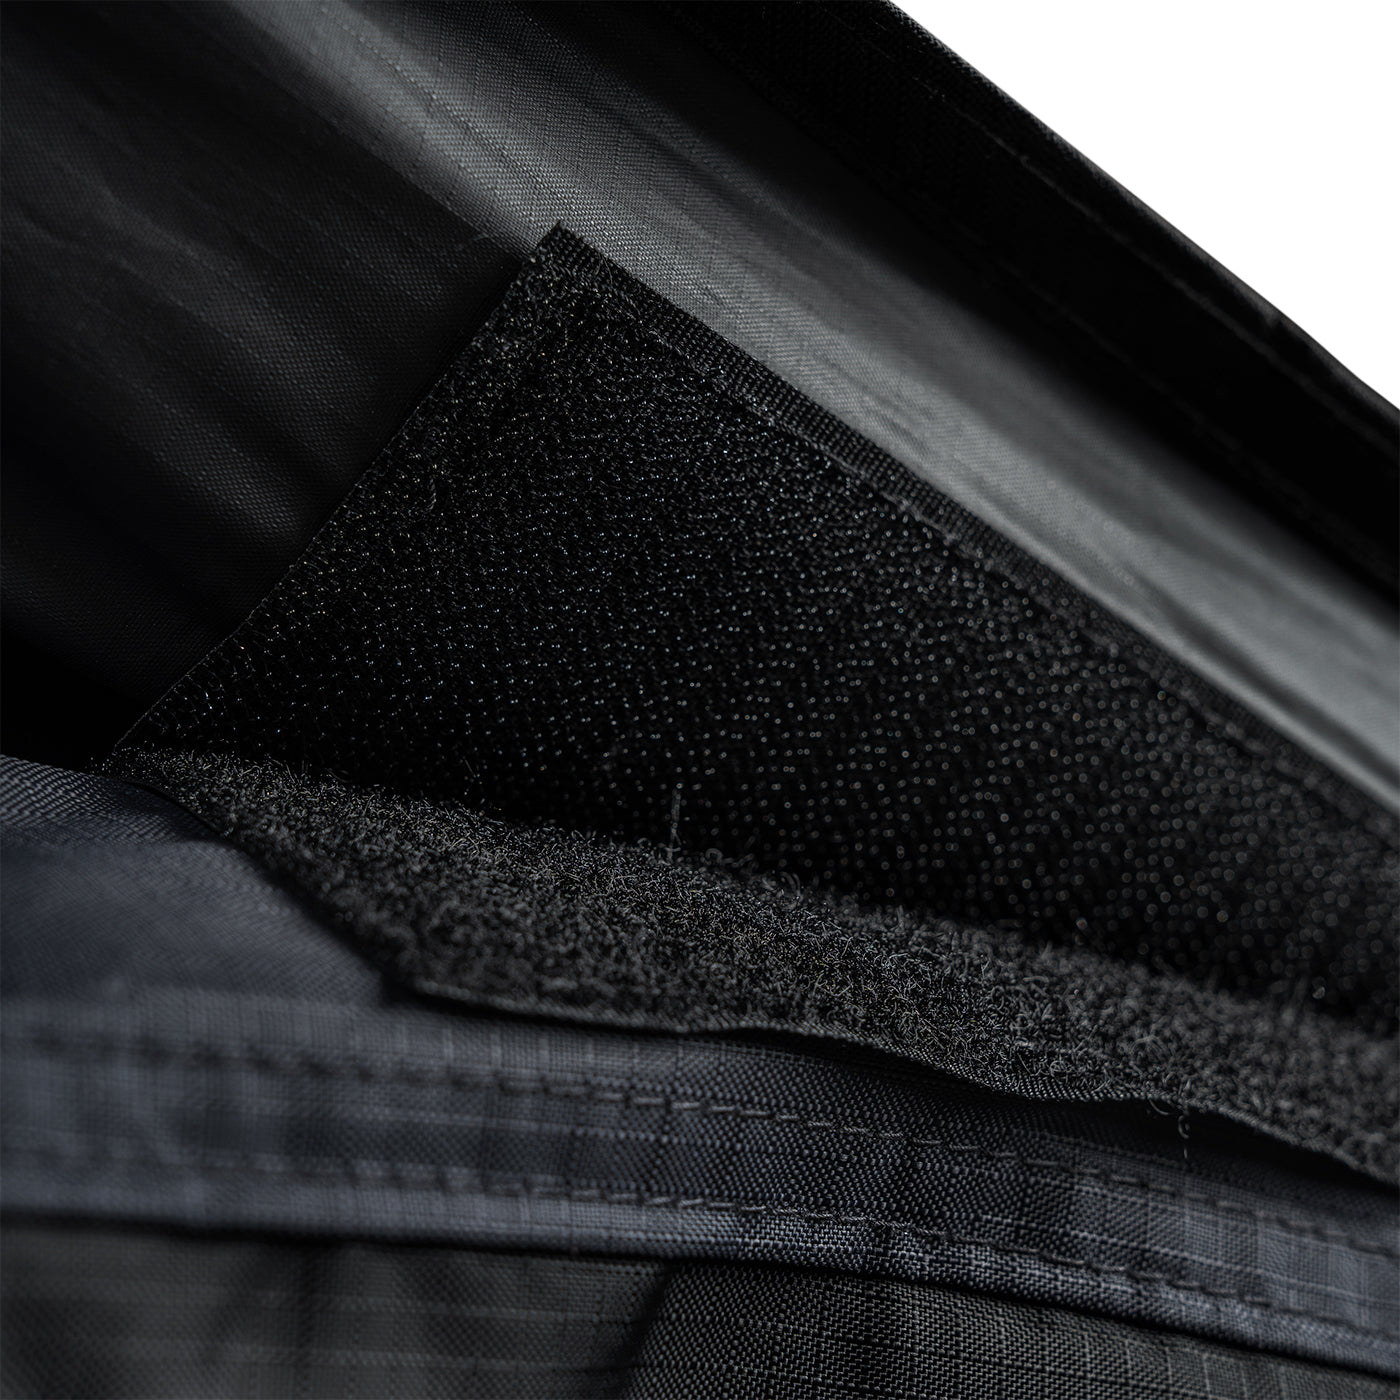 Nylon fabric KENT with coating, grey